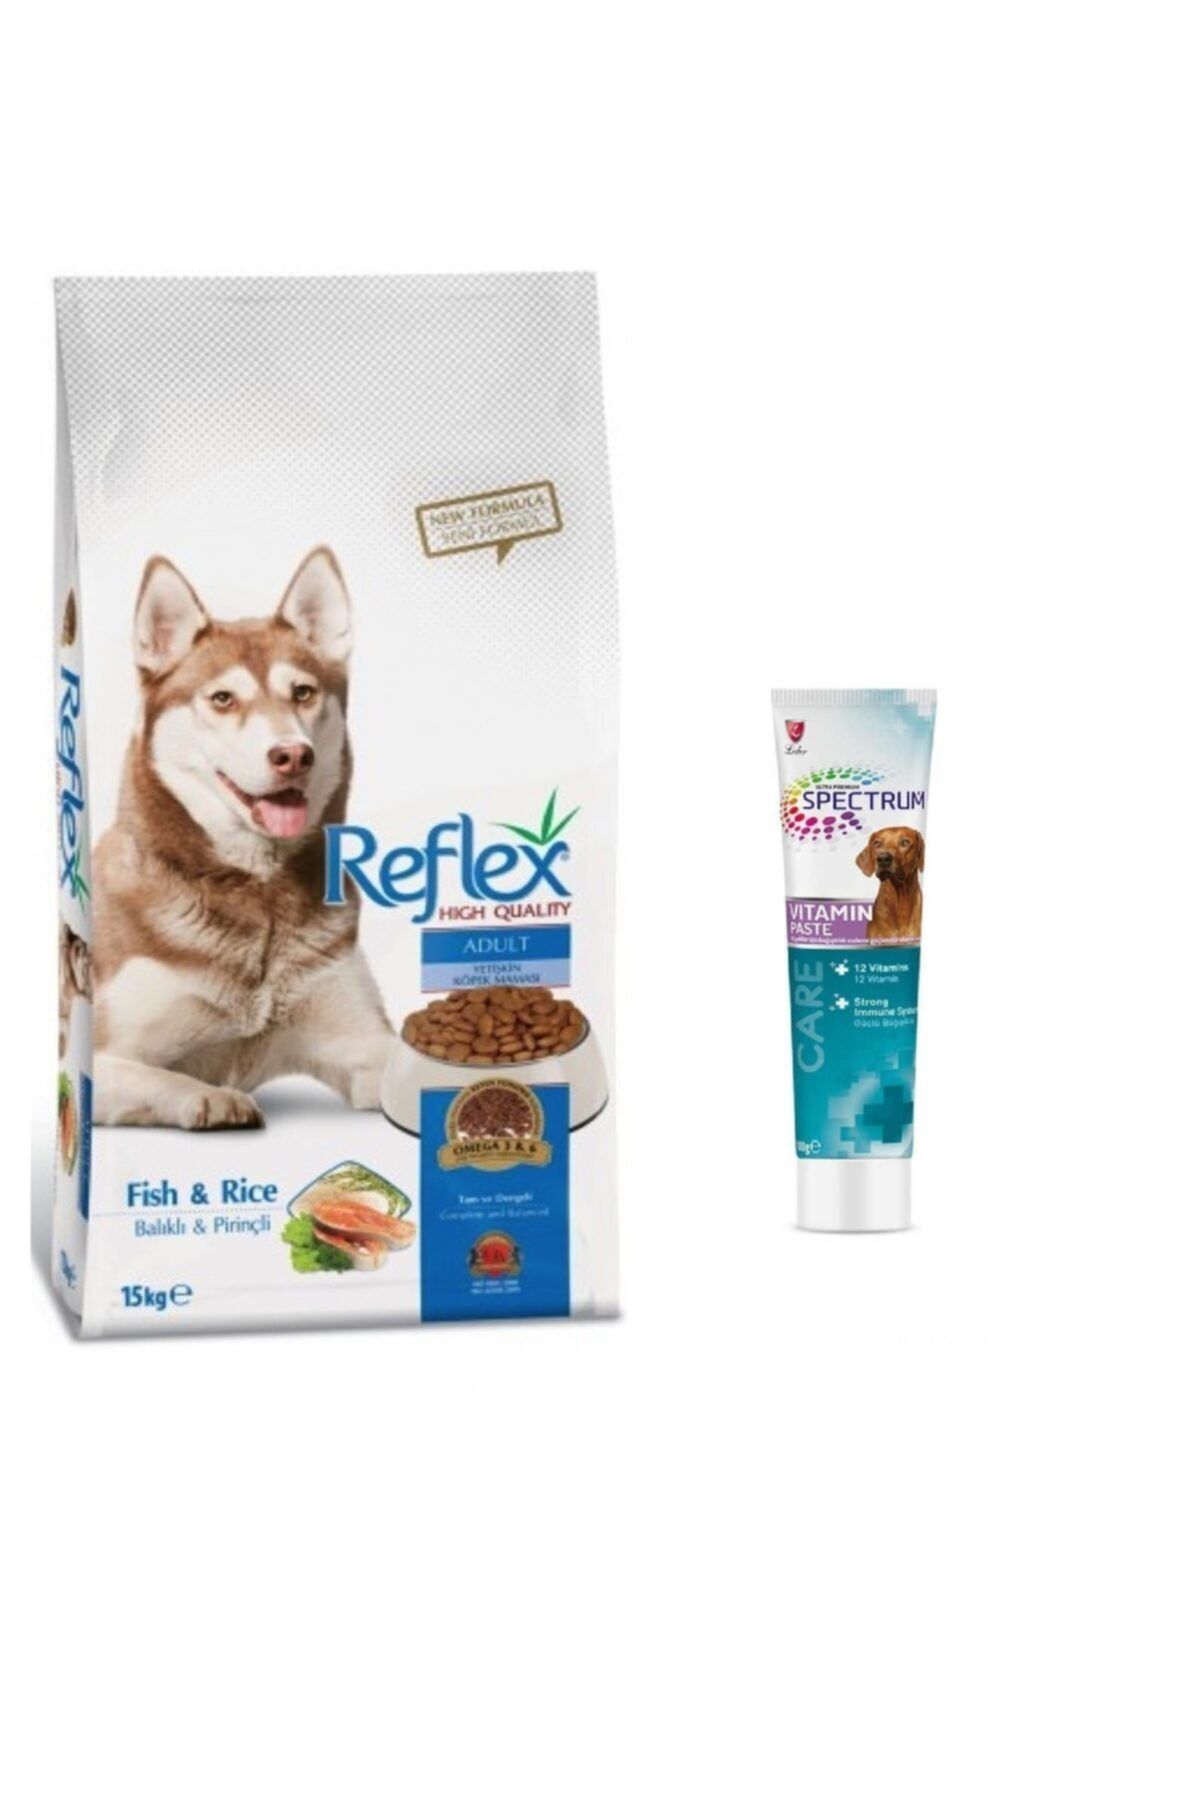 Reflex Balıklı & Pirinçli Yetişkin Köpek Maması 15 Kg + Spectrum Multivitamin